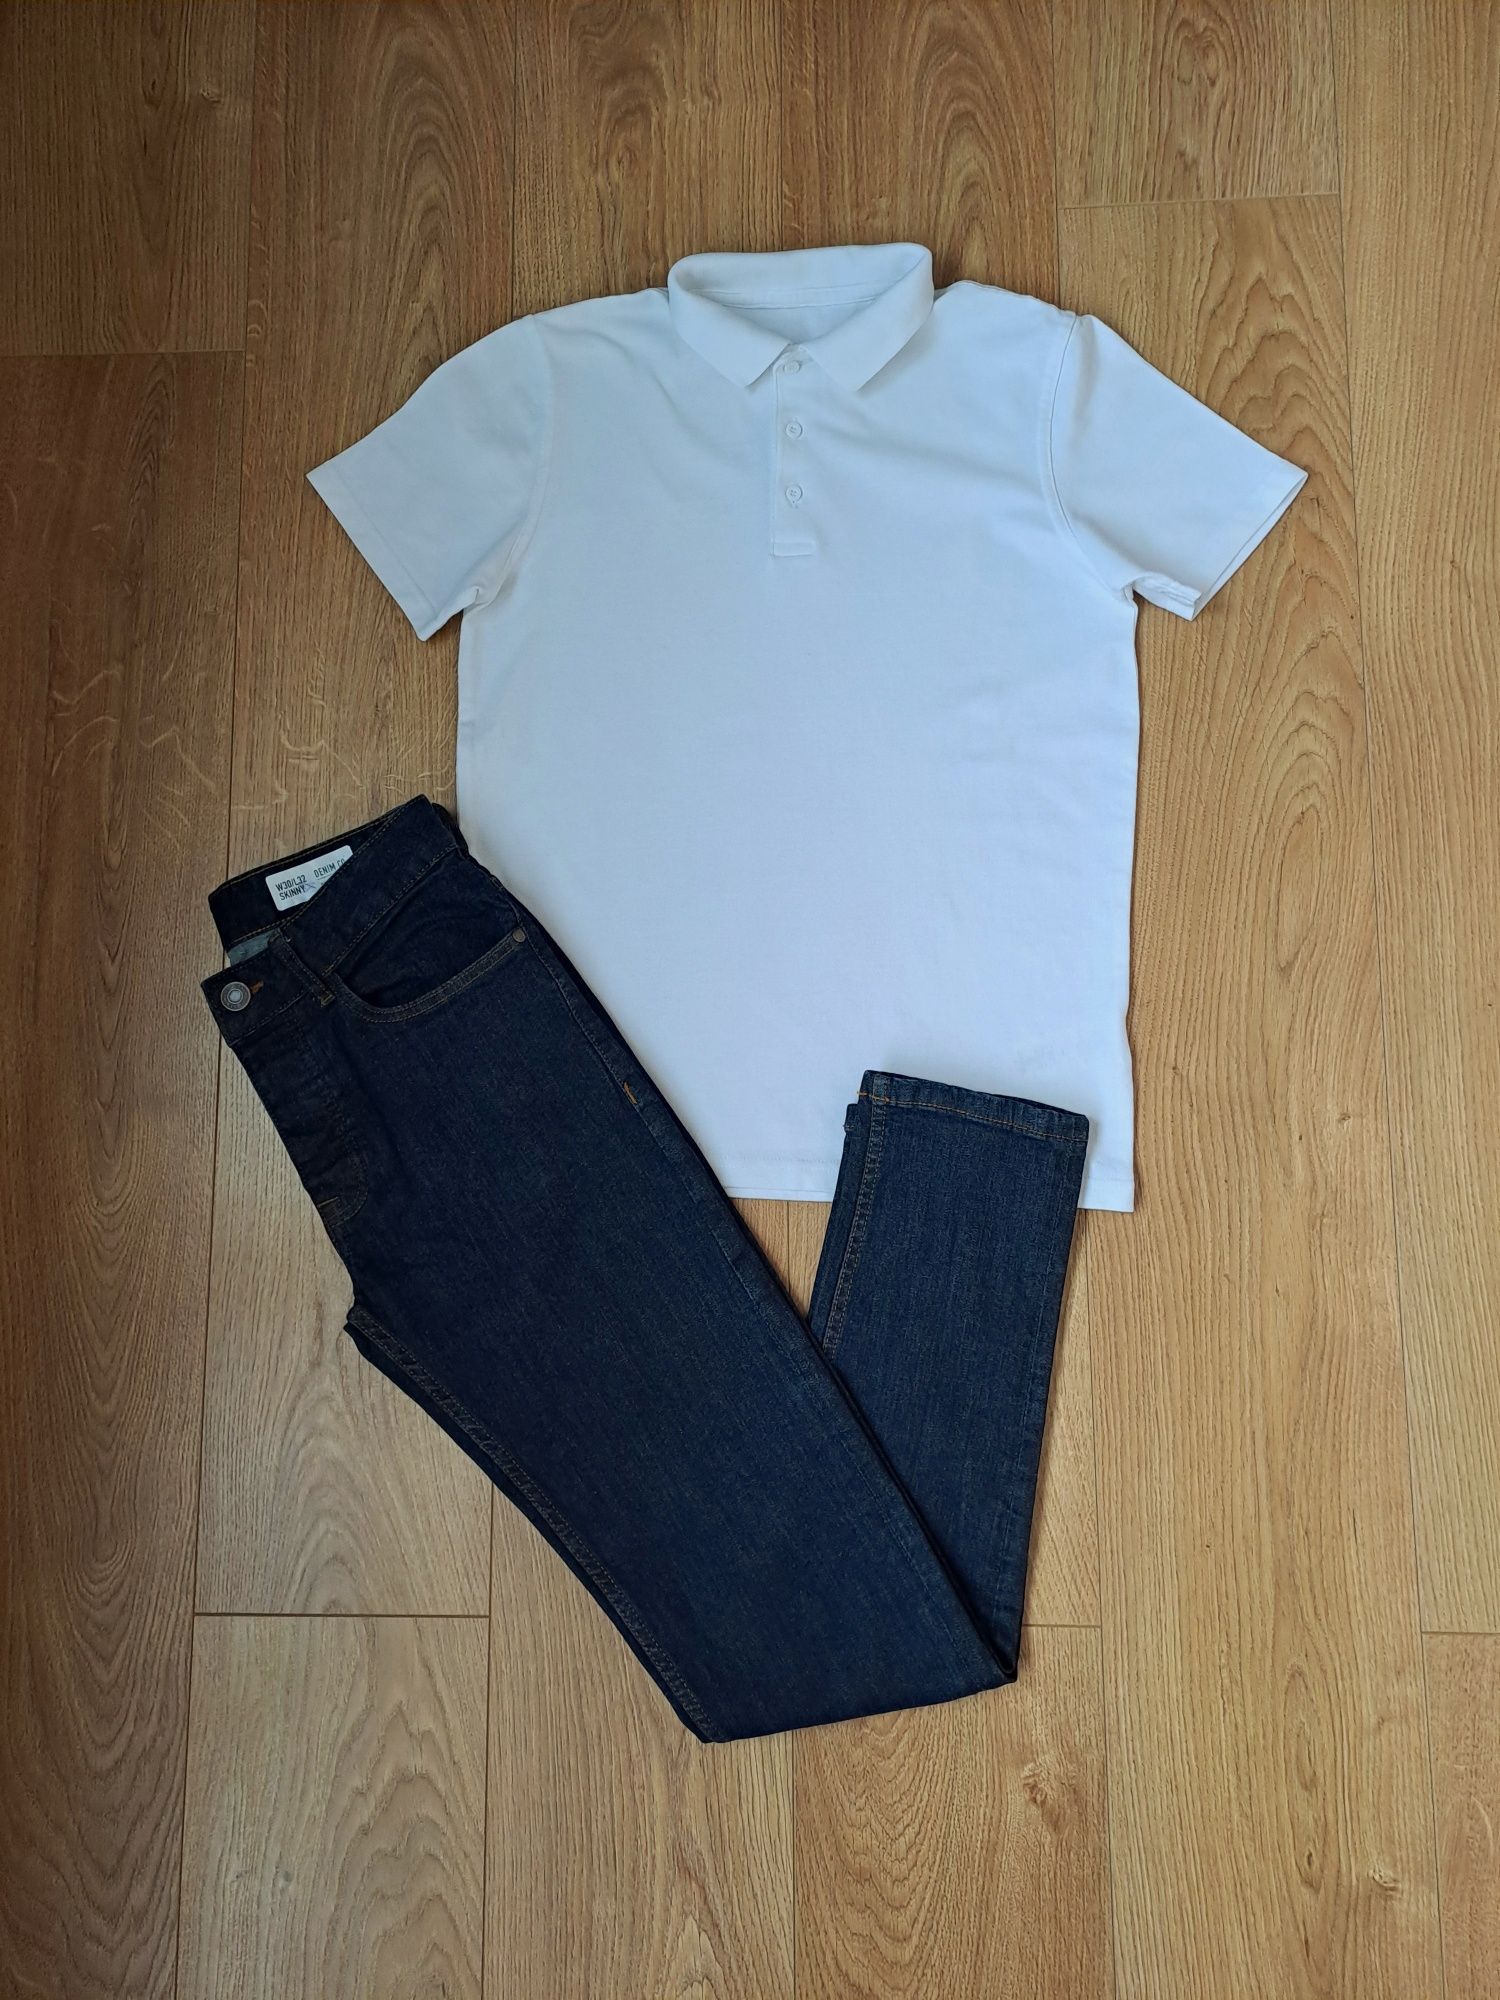 Нарядный набор/костюм/белая тенниска/джинсы/белое поло